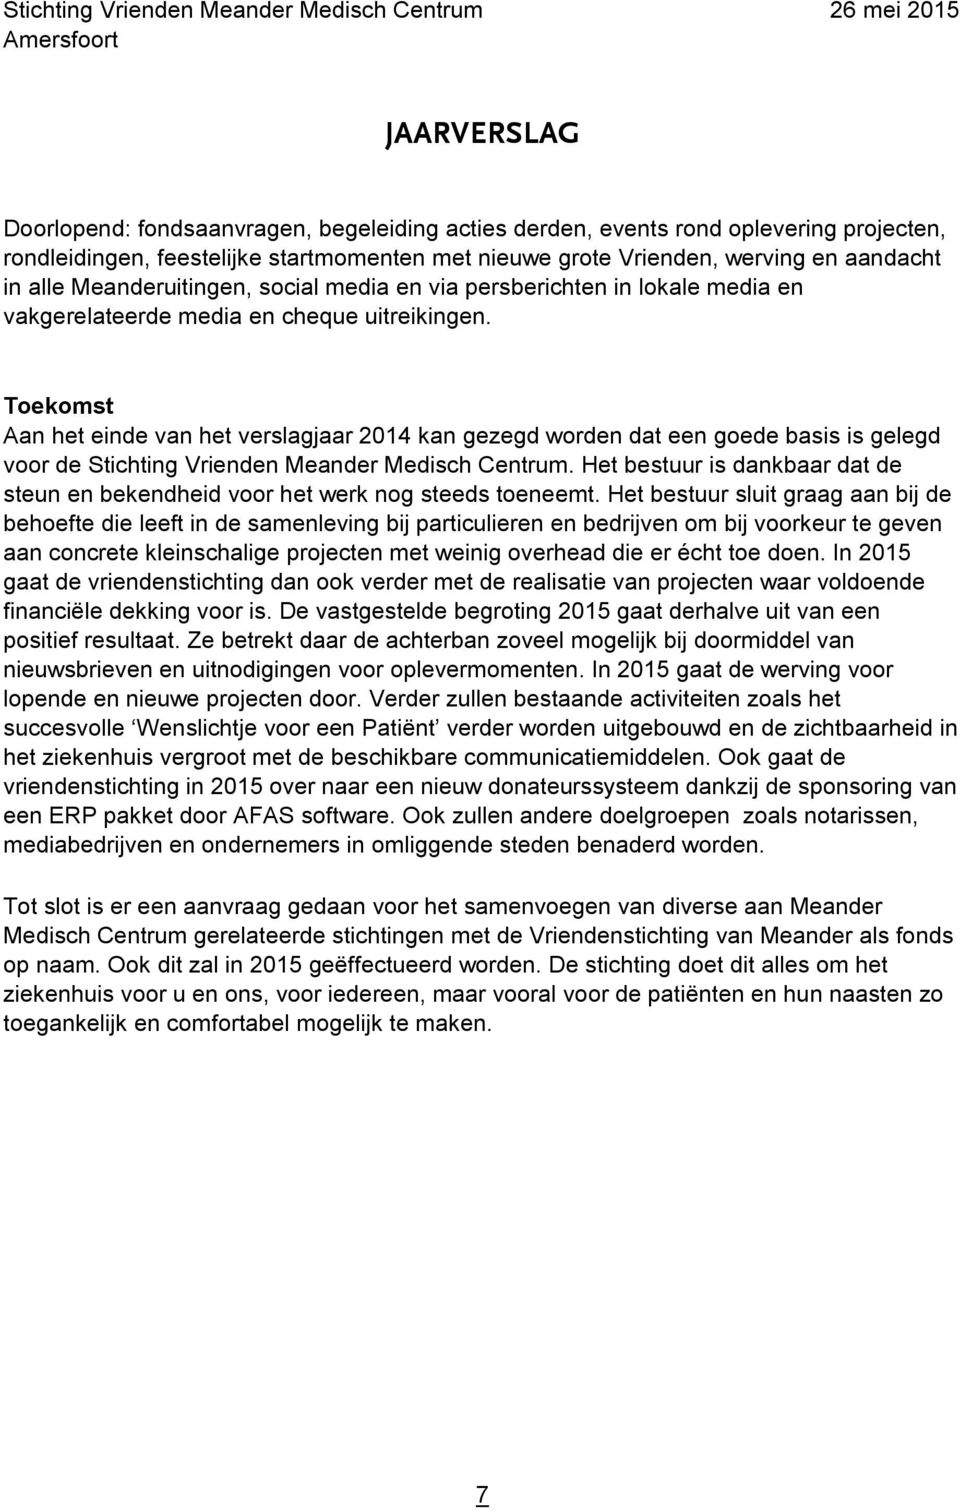 Toekomst Aan het einde van het verslagjaar 2014 kan gezegd worden dat een goede basis is gelegd voor de Stichting Vrienden Meander Medisch Centrum.